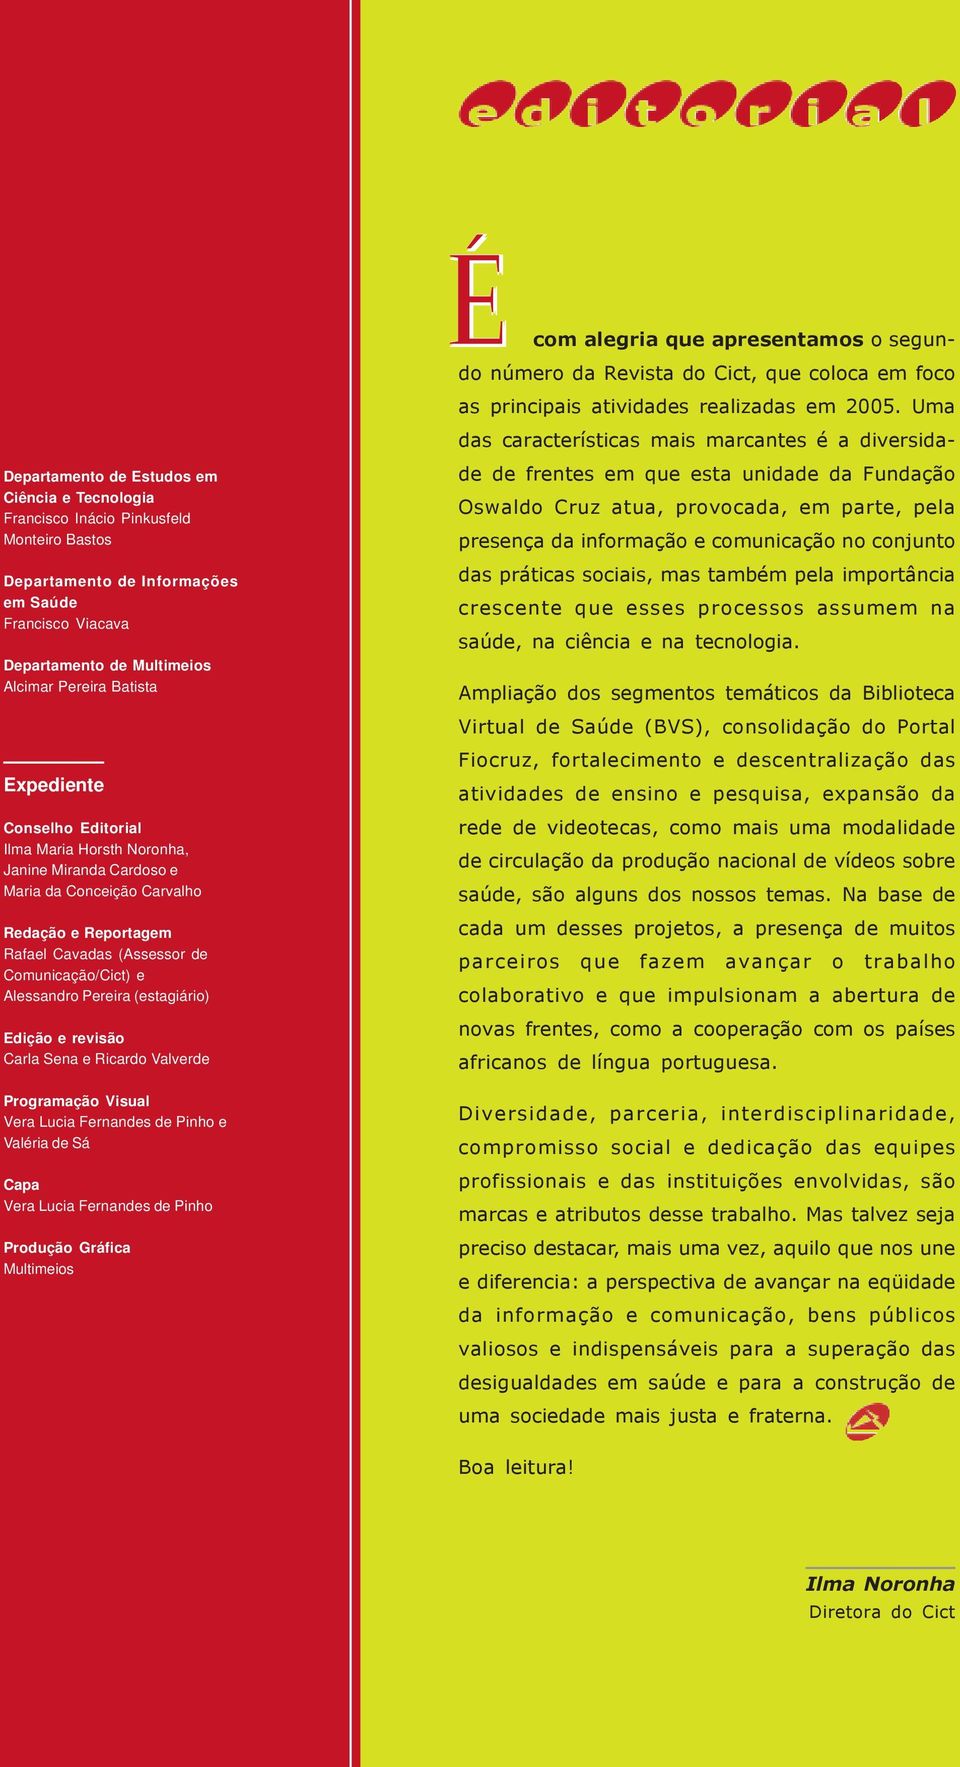 (estagiário) Edição e revisão Carla Sena e Ricardo Valverde Écom alegria que apresentamos o segundo número da Revista do Cict, que coloca em foco as principais atividades realizadas em 2005.